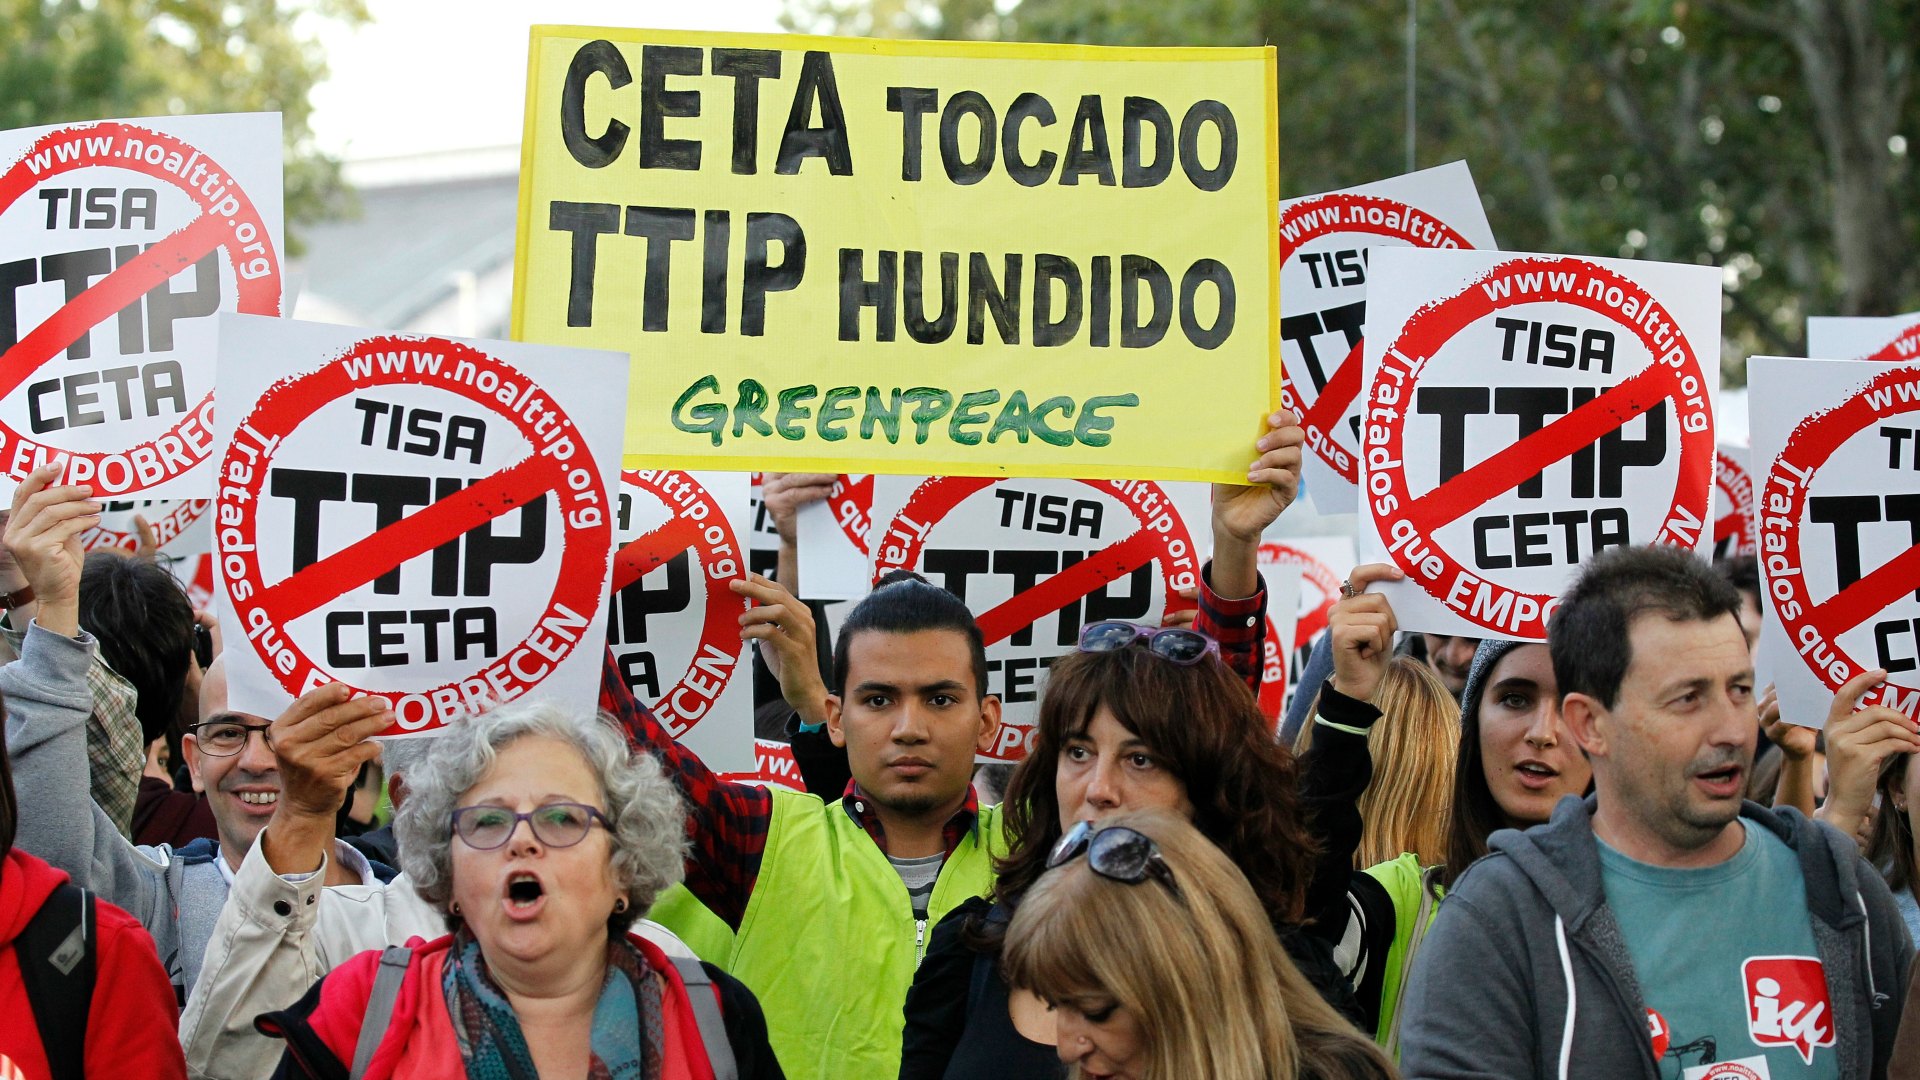 El Congreso aprueba el acuerdo CETA con la abstención socialista